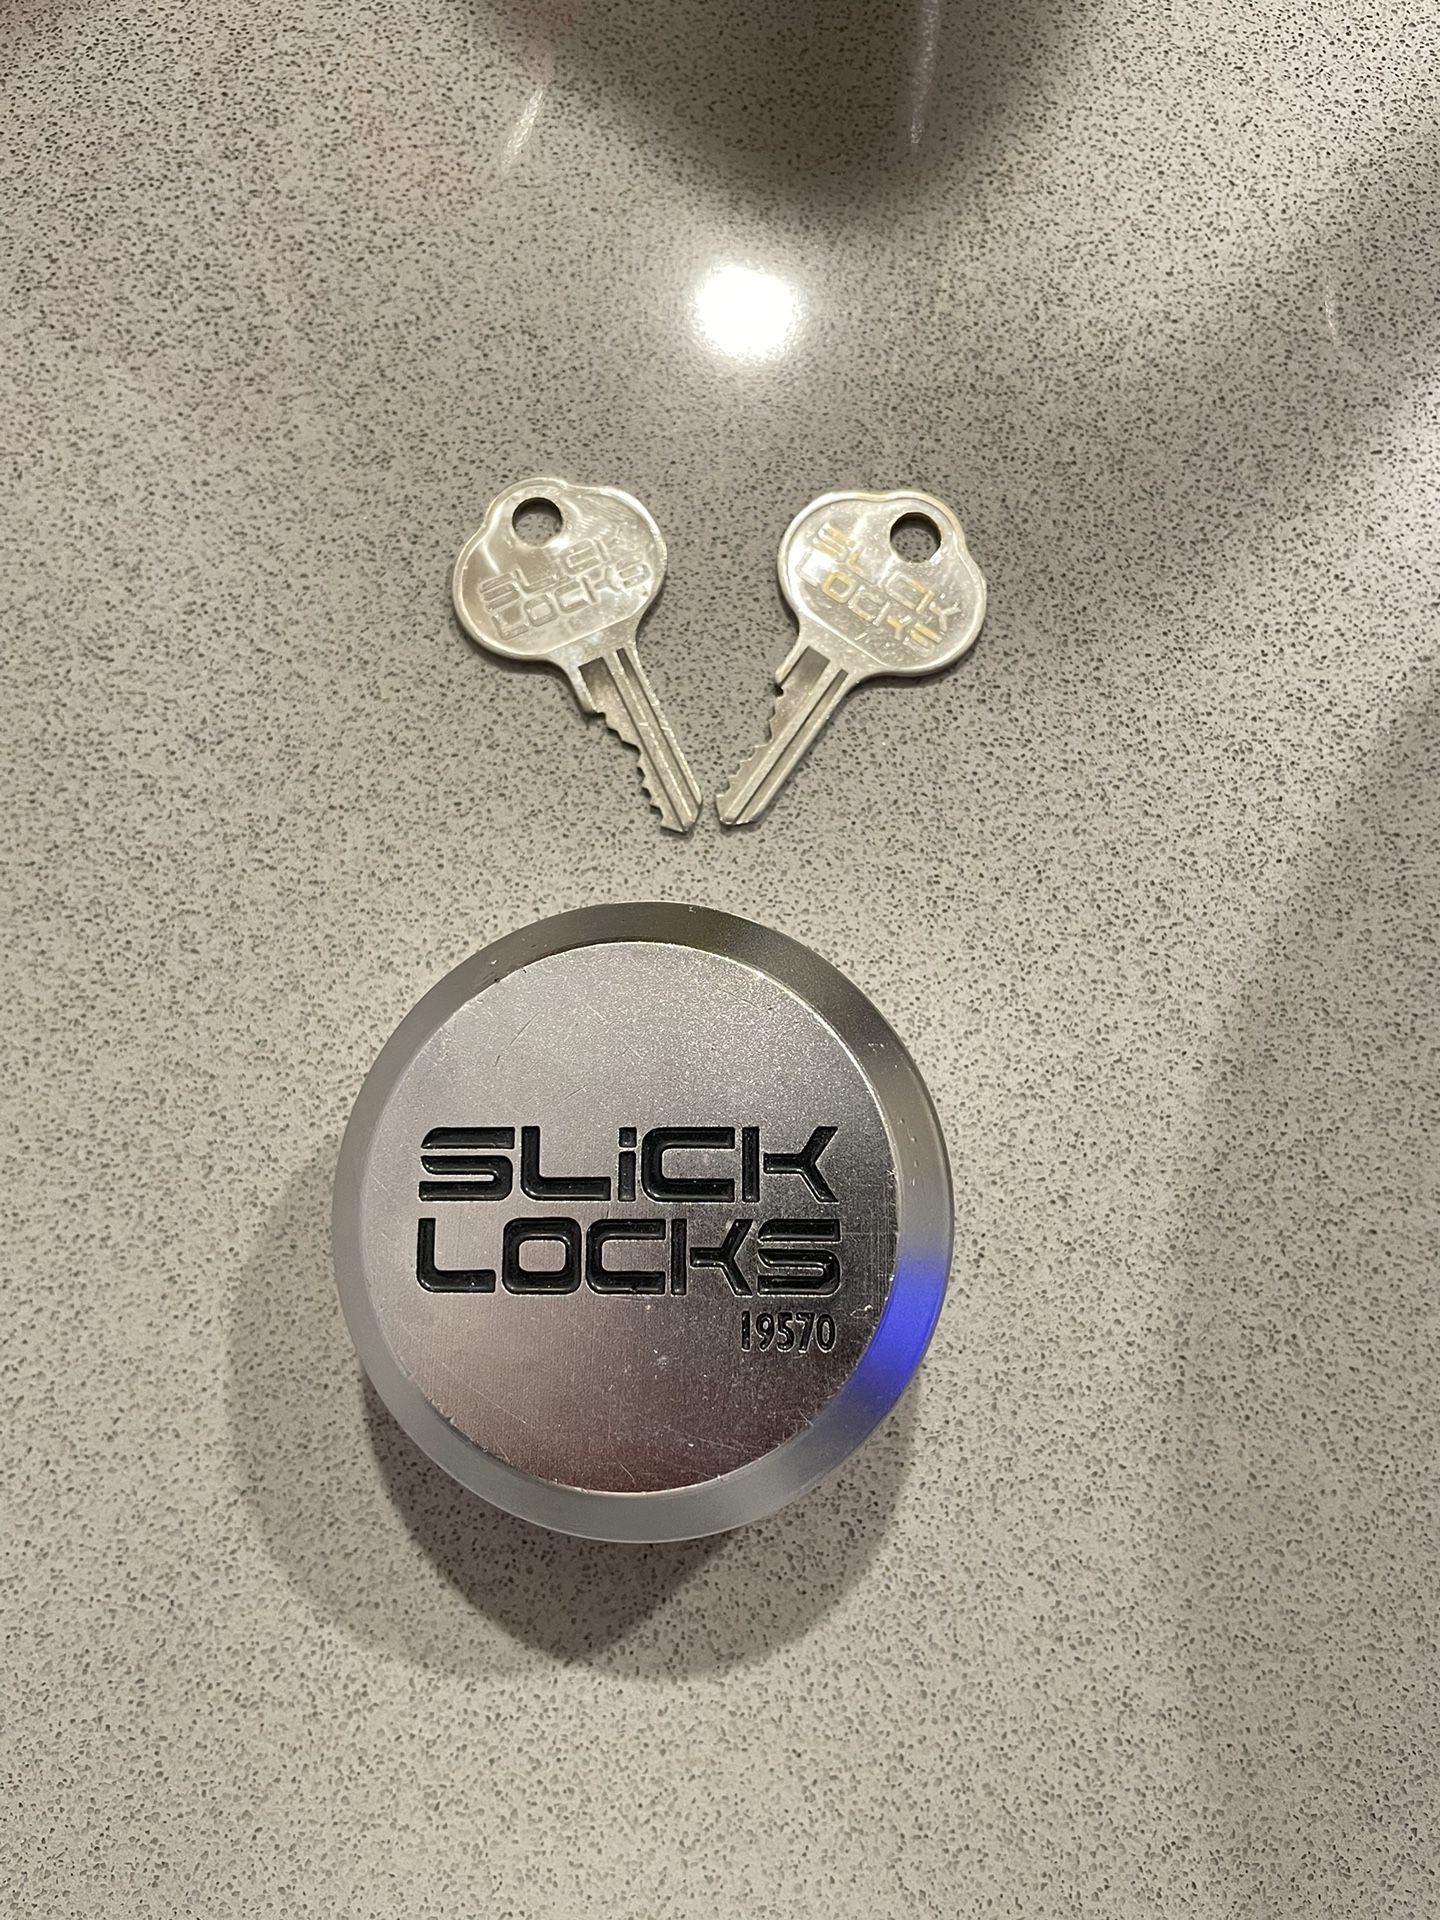 Lock Slick Locks 